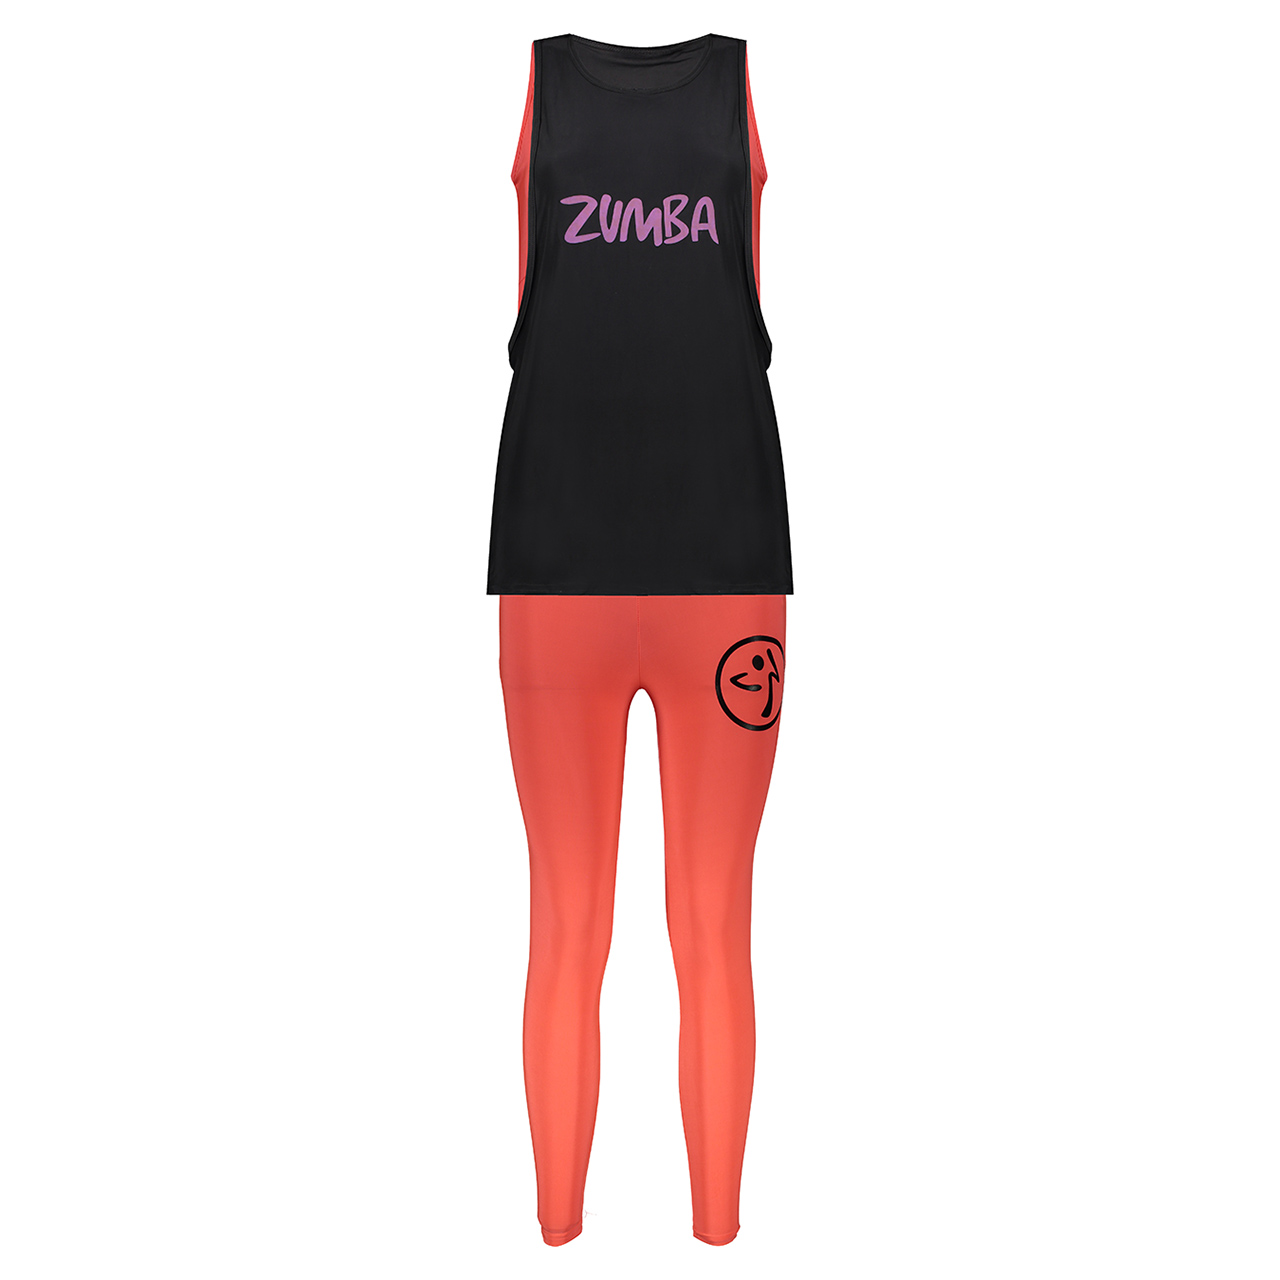 ست تاپ و لگینگ ورزشی زنانه کد P-Zomba